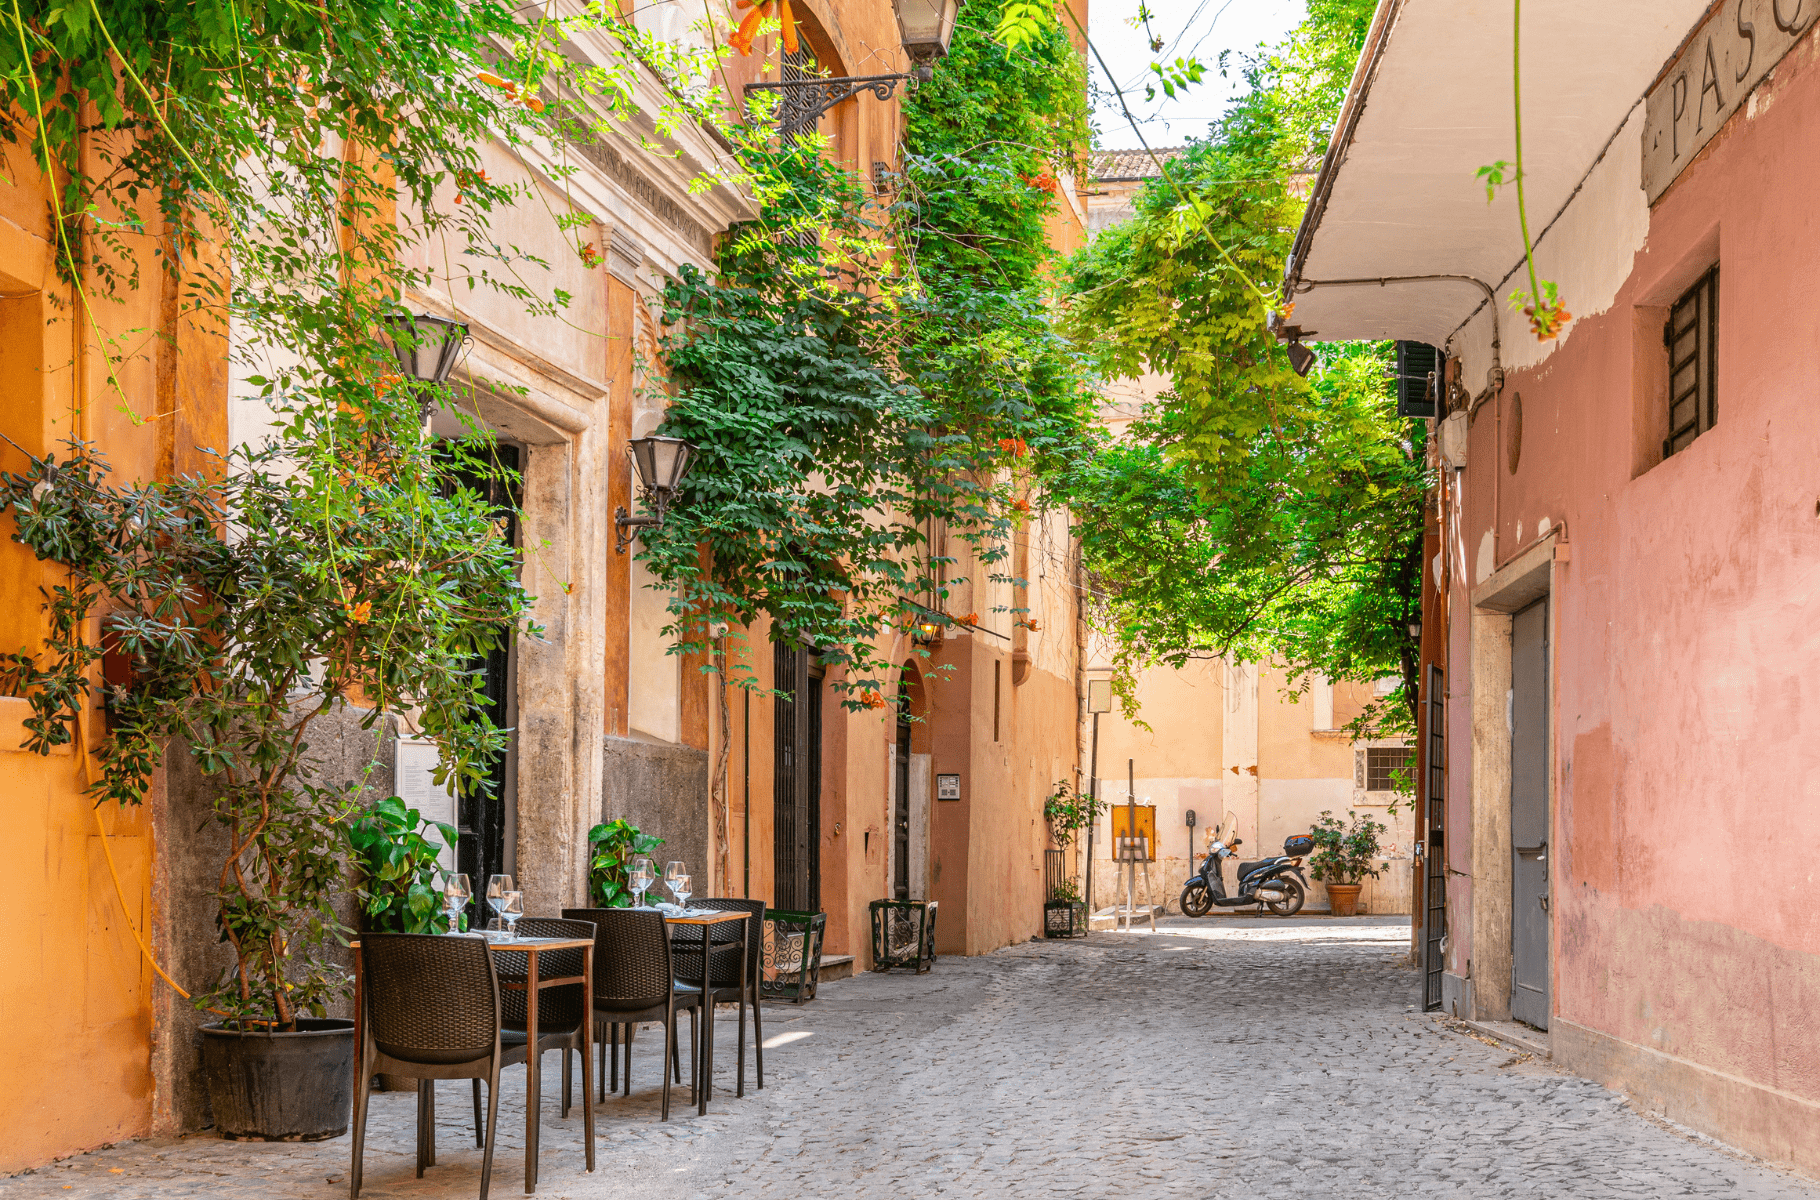 Uma tranquila rua de paralelepípedos em Trastevere, Roma, com mesas de um café ao ar livre dispostas ao lado de plantas exuberantes e fachadas de edifícios em tons quentes de amarelo e terracota